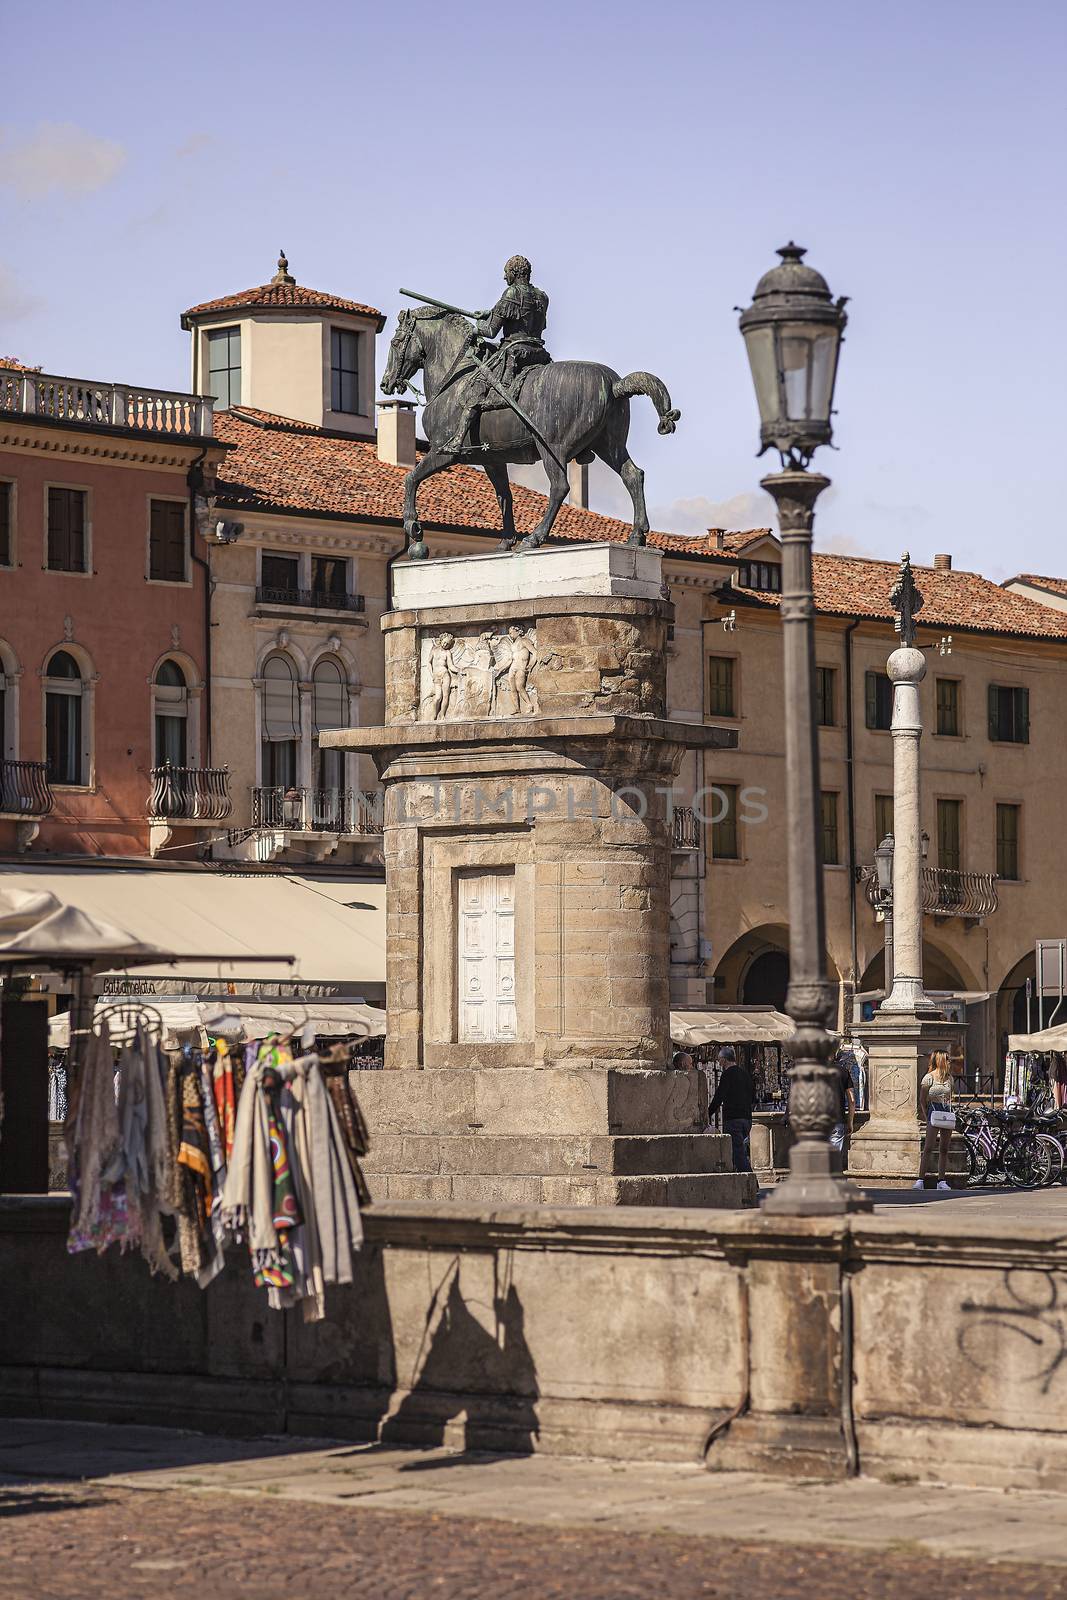 PADOVA, ITALY 17 JULY 2020: Horse statue in Padua, Italy